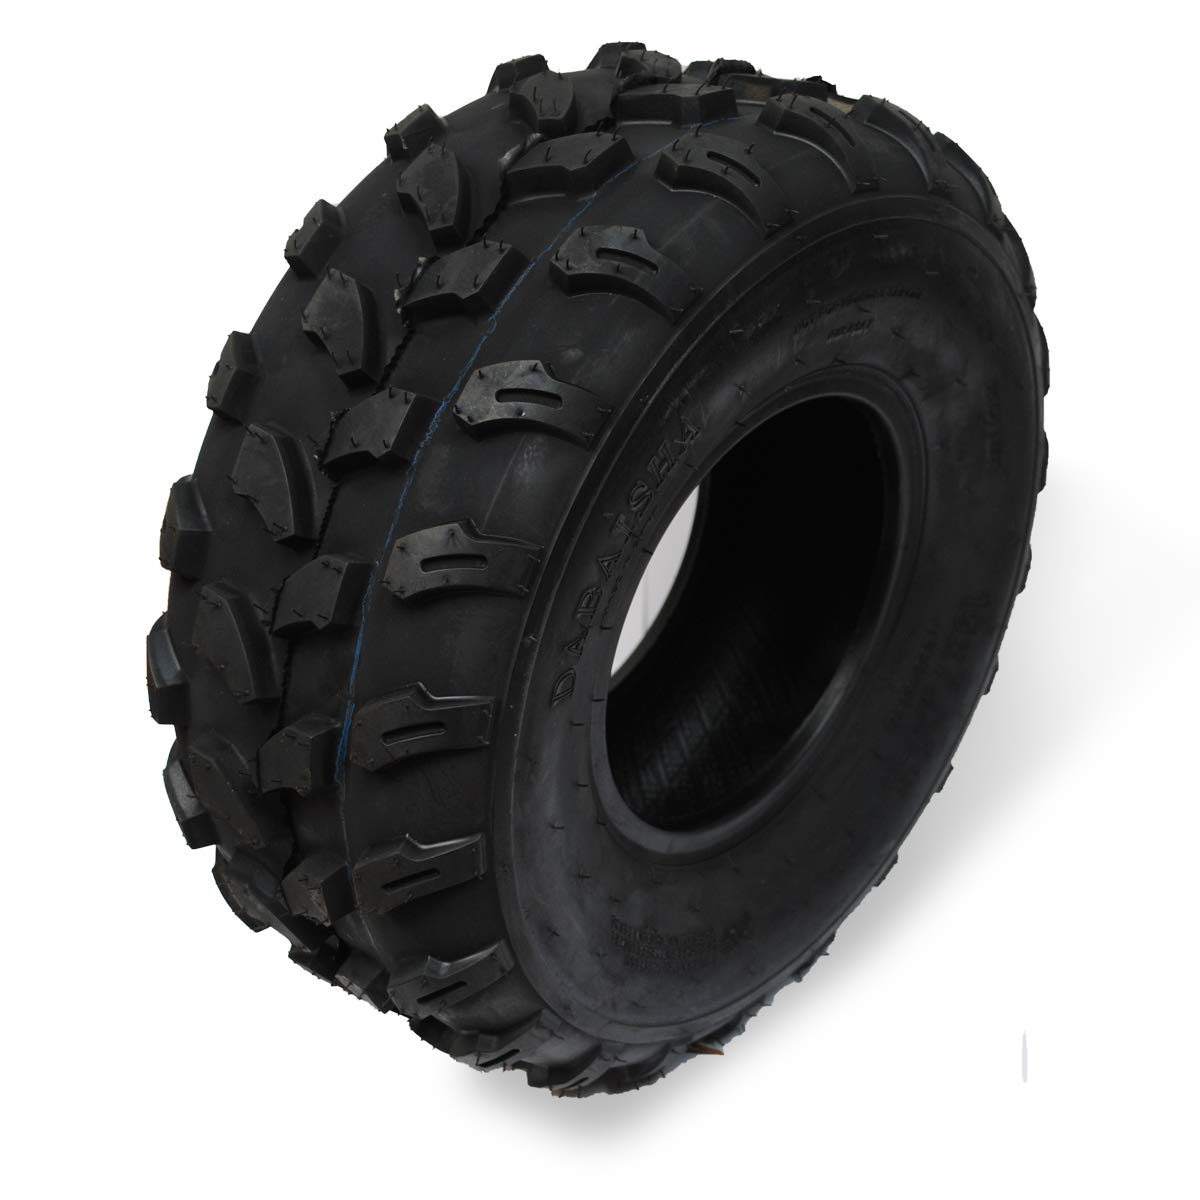 20,3 cm Reifen für Quad ATV 110-125 cc Maße 19x7-8 von Kawin